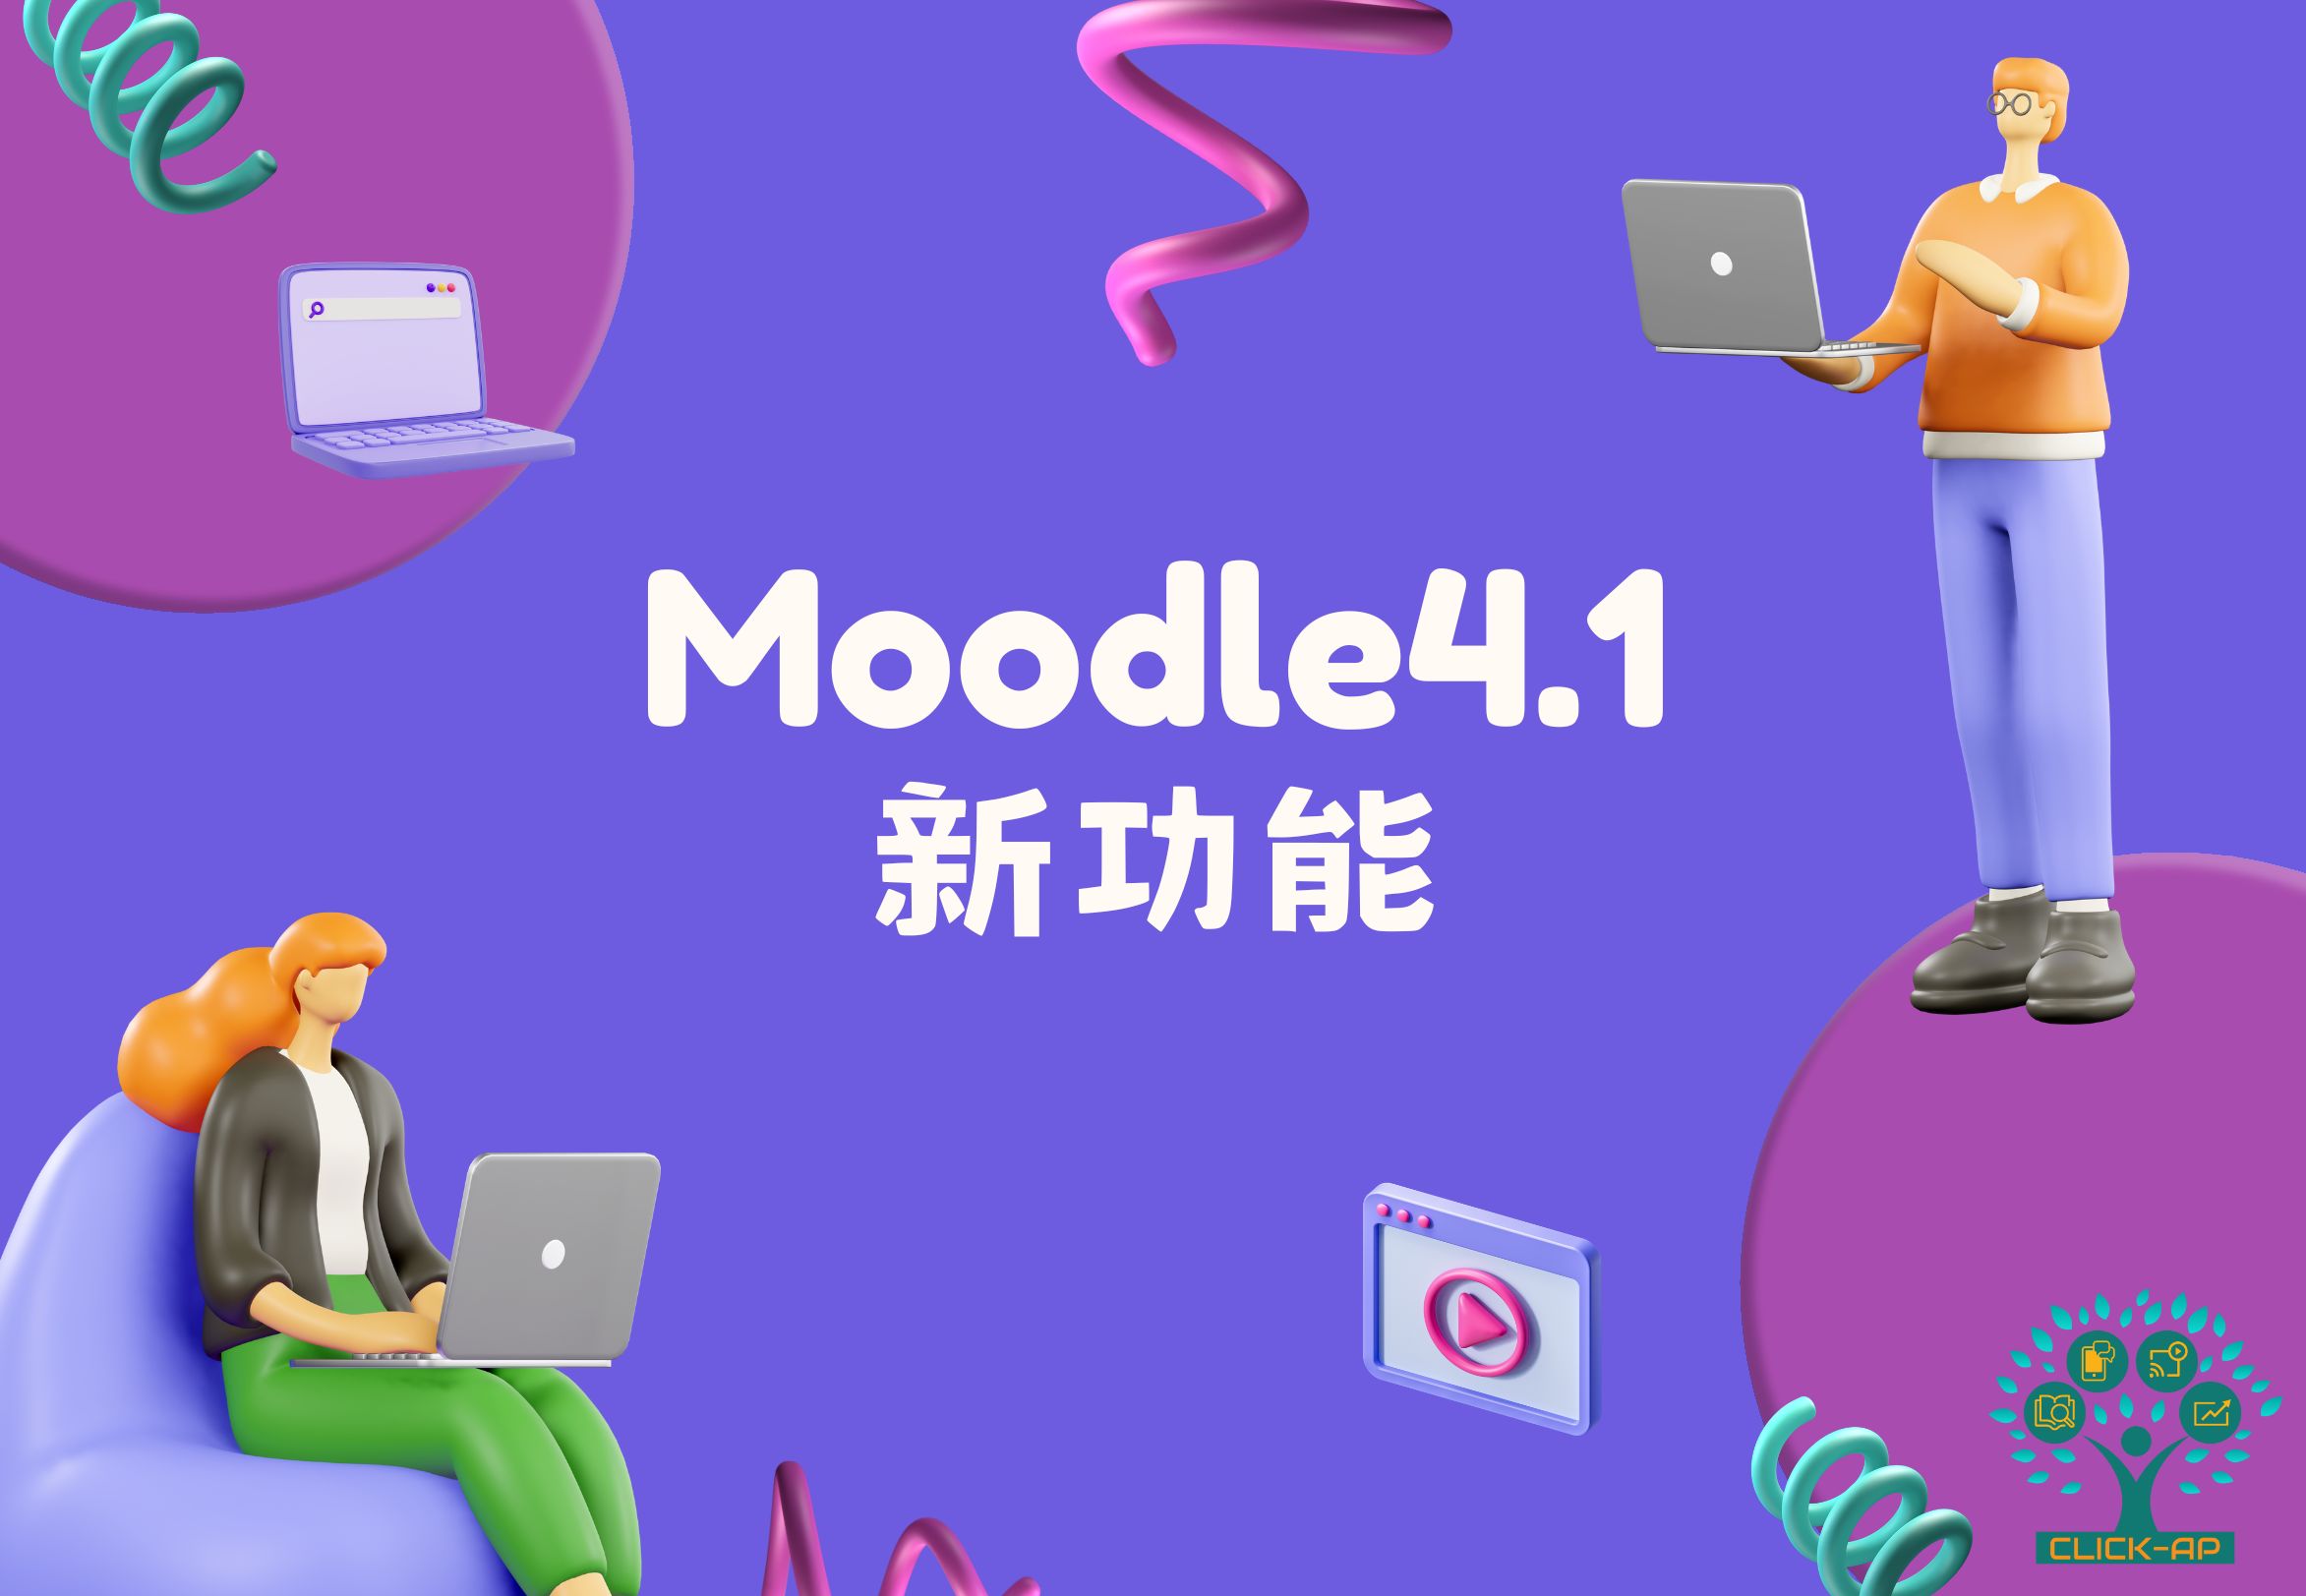 Moodle 4.1 新功能